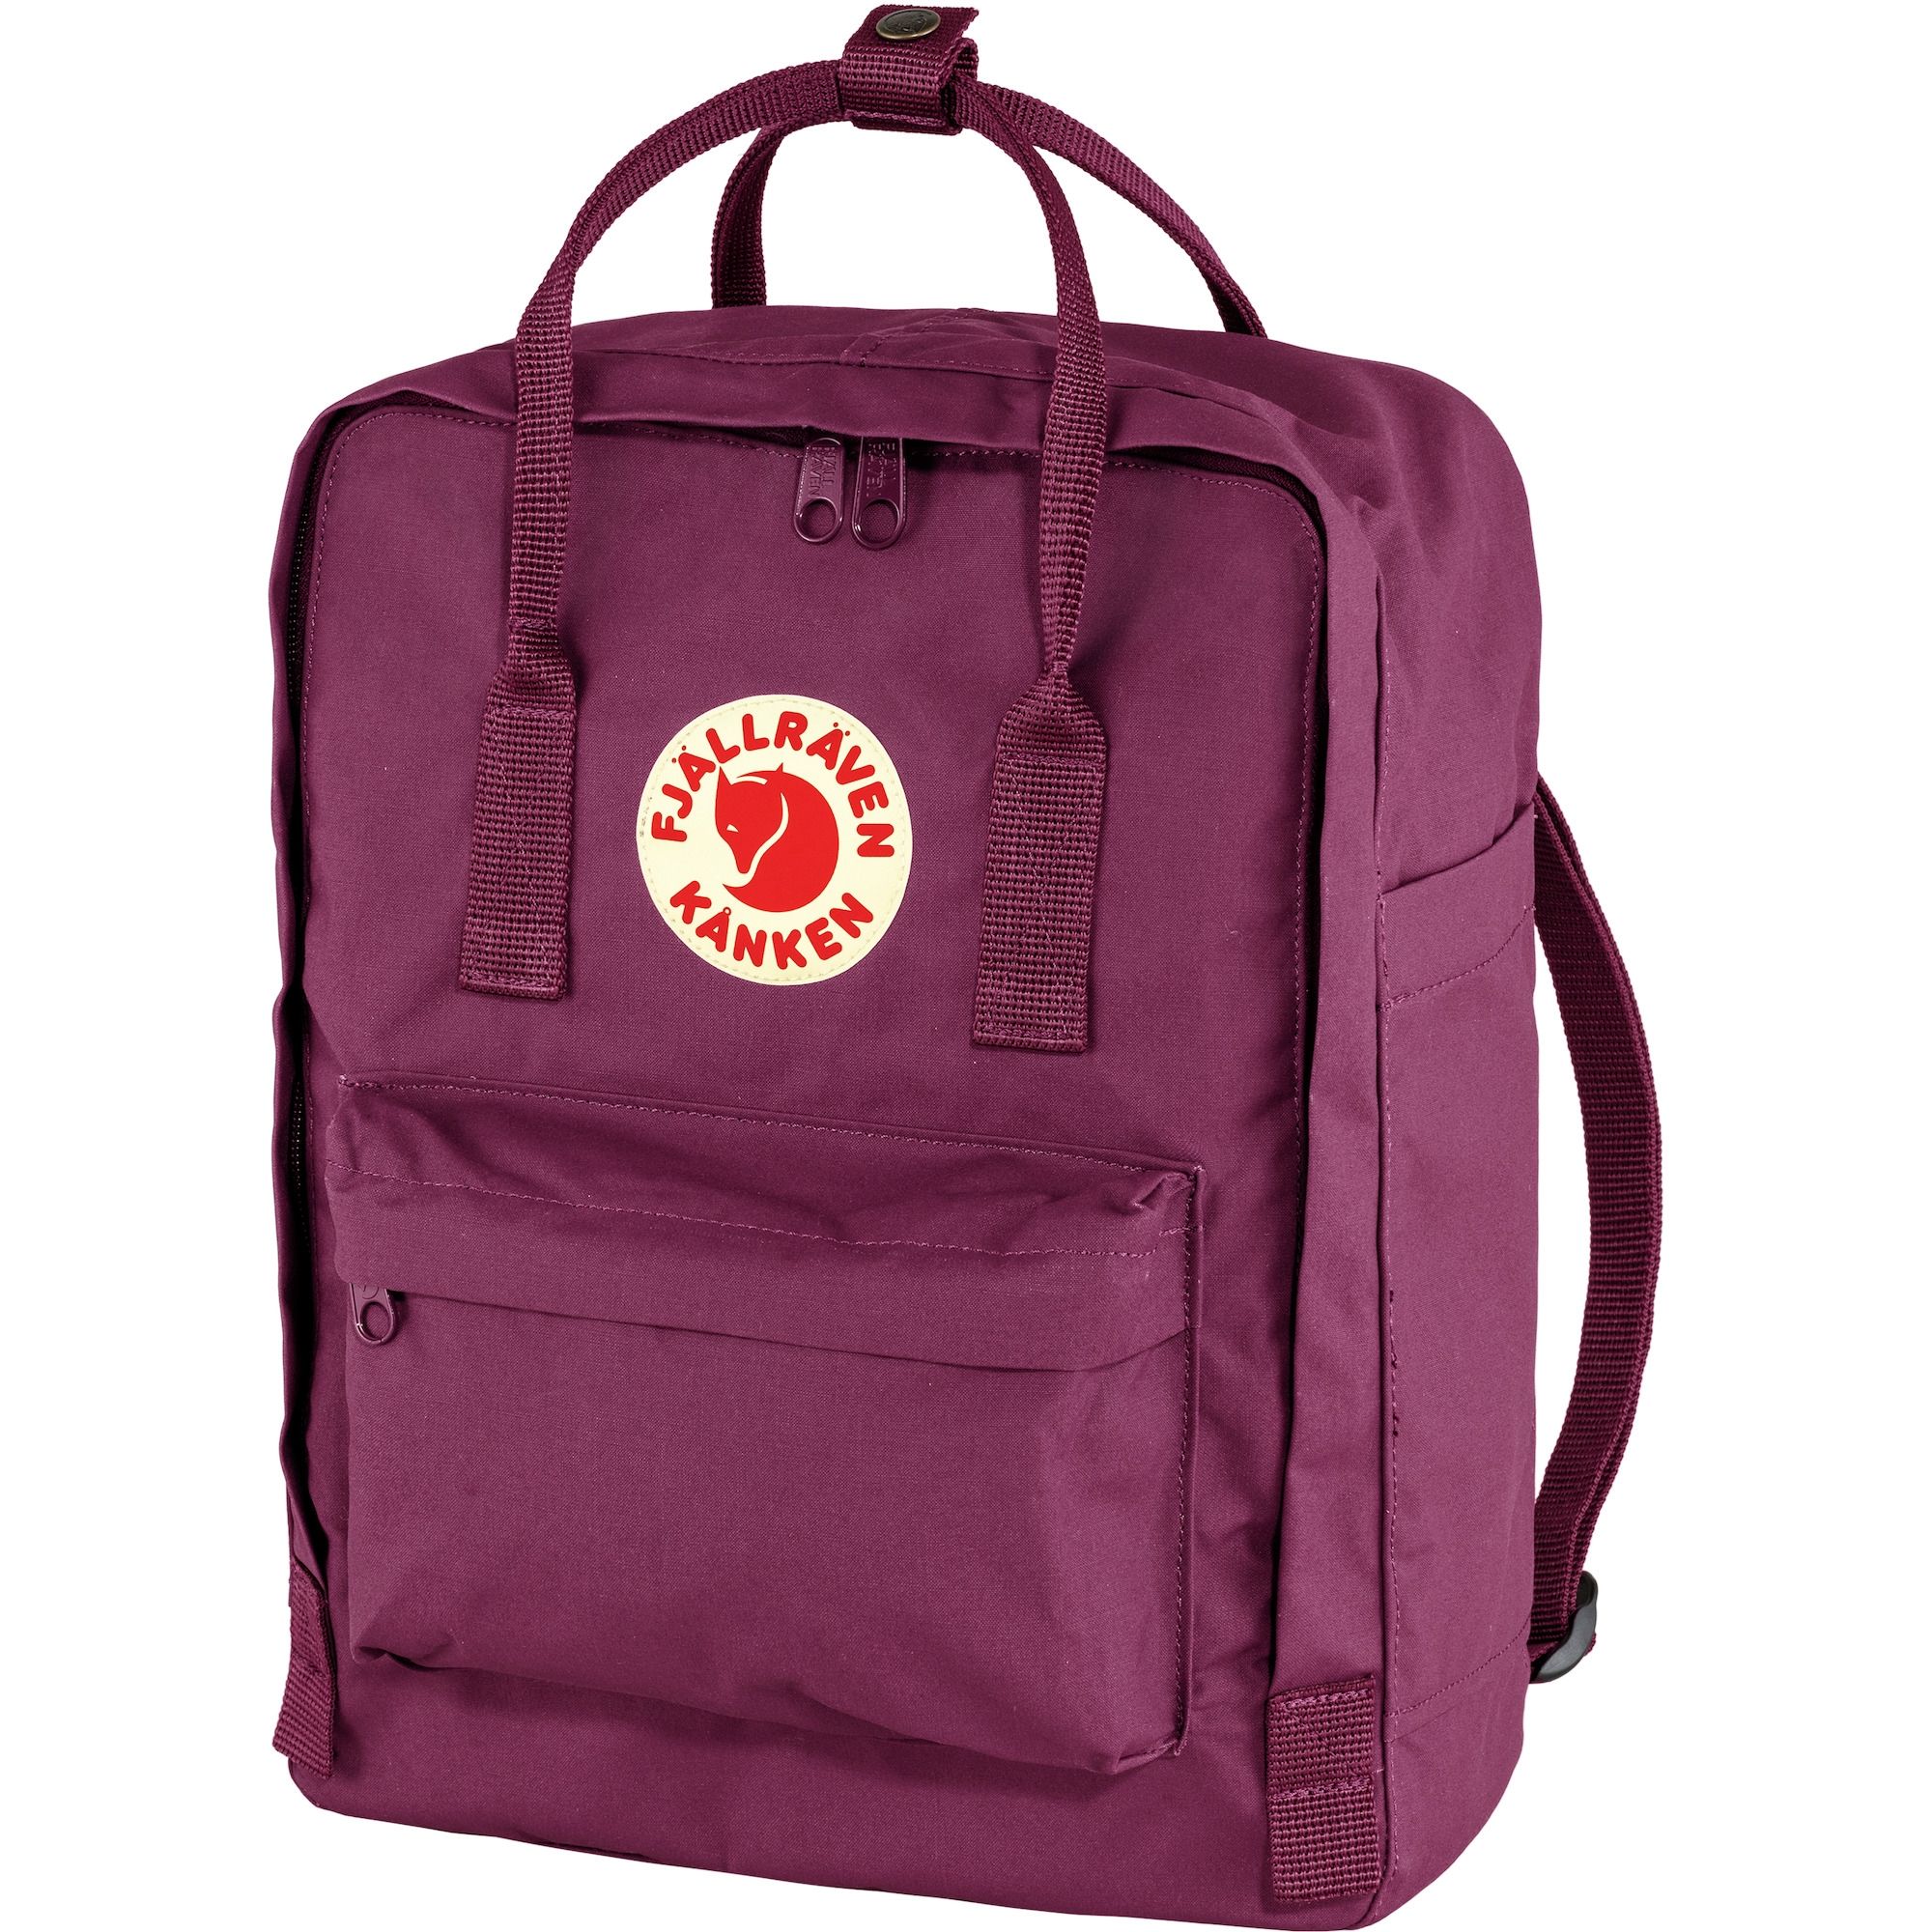 Kanken Backpack Royal Purple 